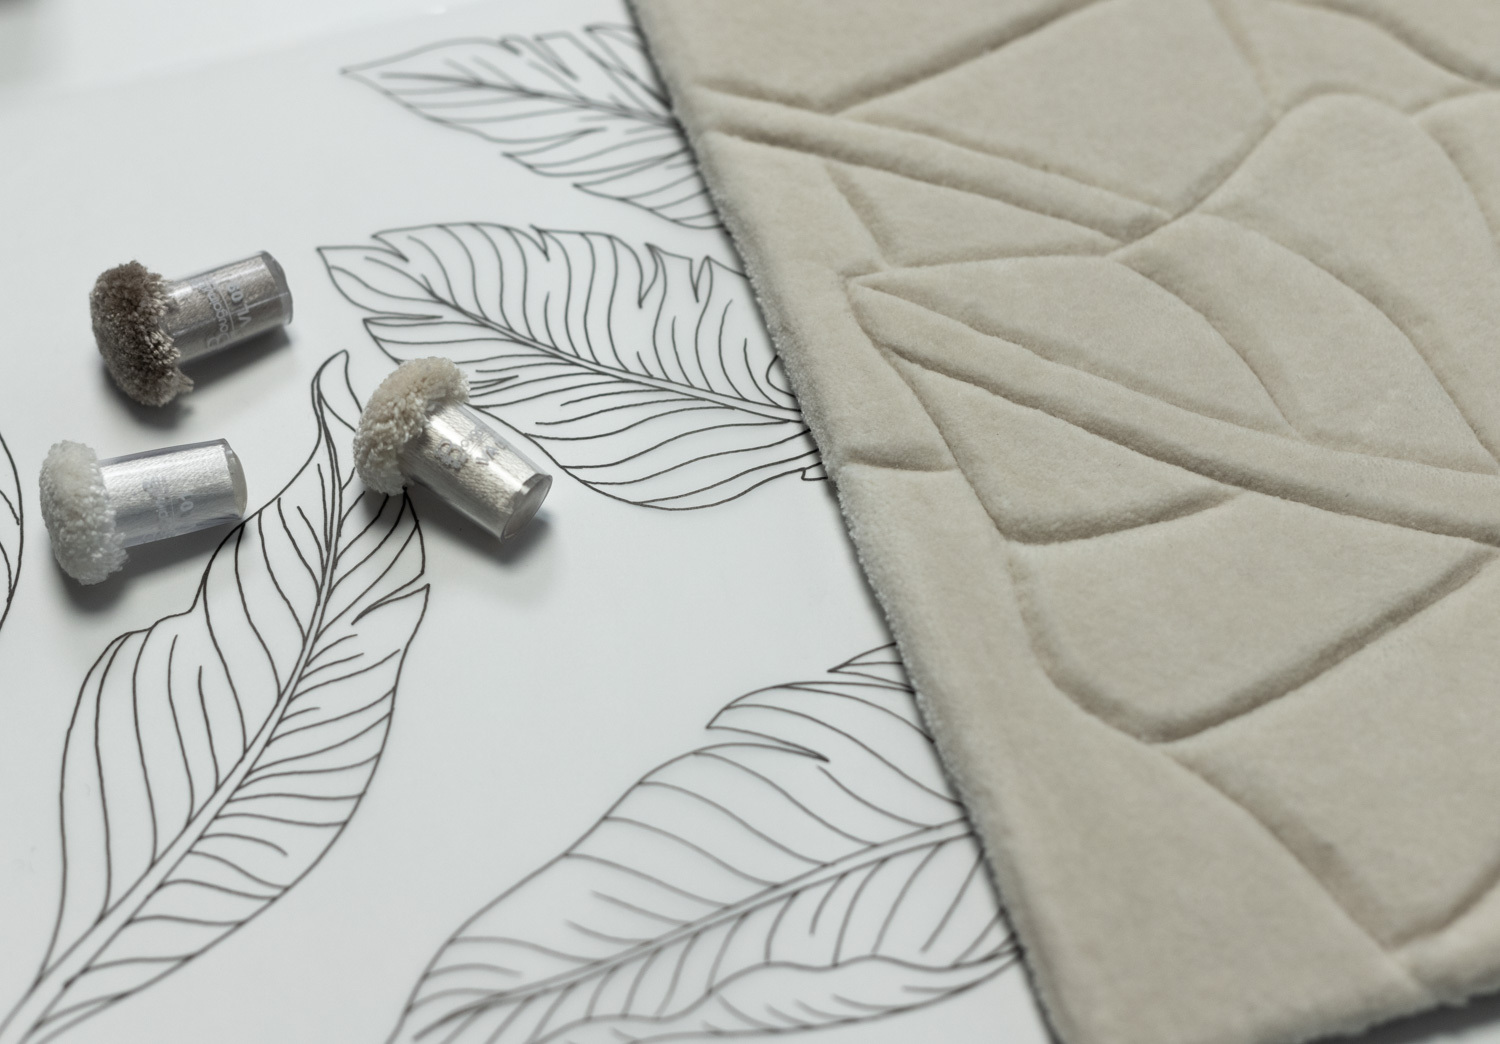 Diseño de lujo y alfombras de alta gama hechas a medida • Edition bougainville bureau etude RVB 2